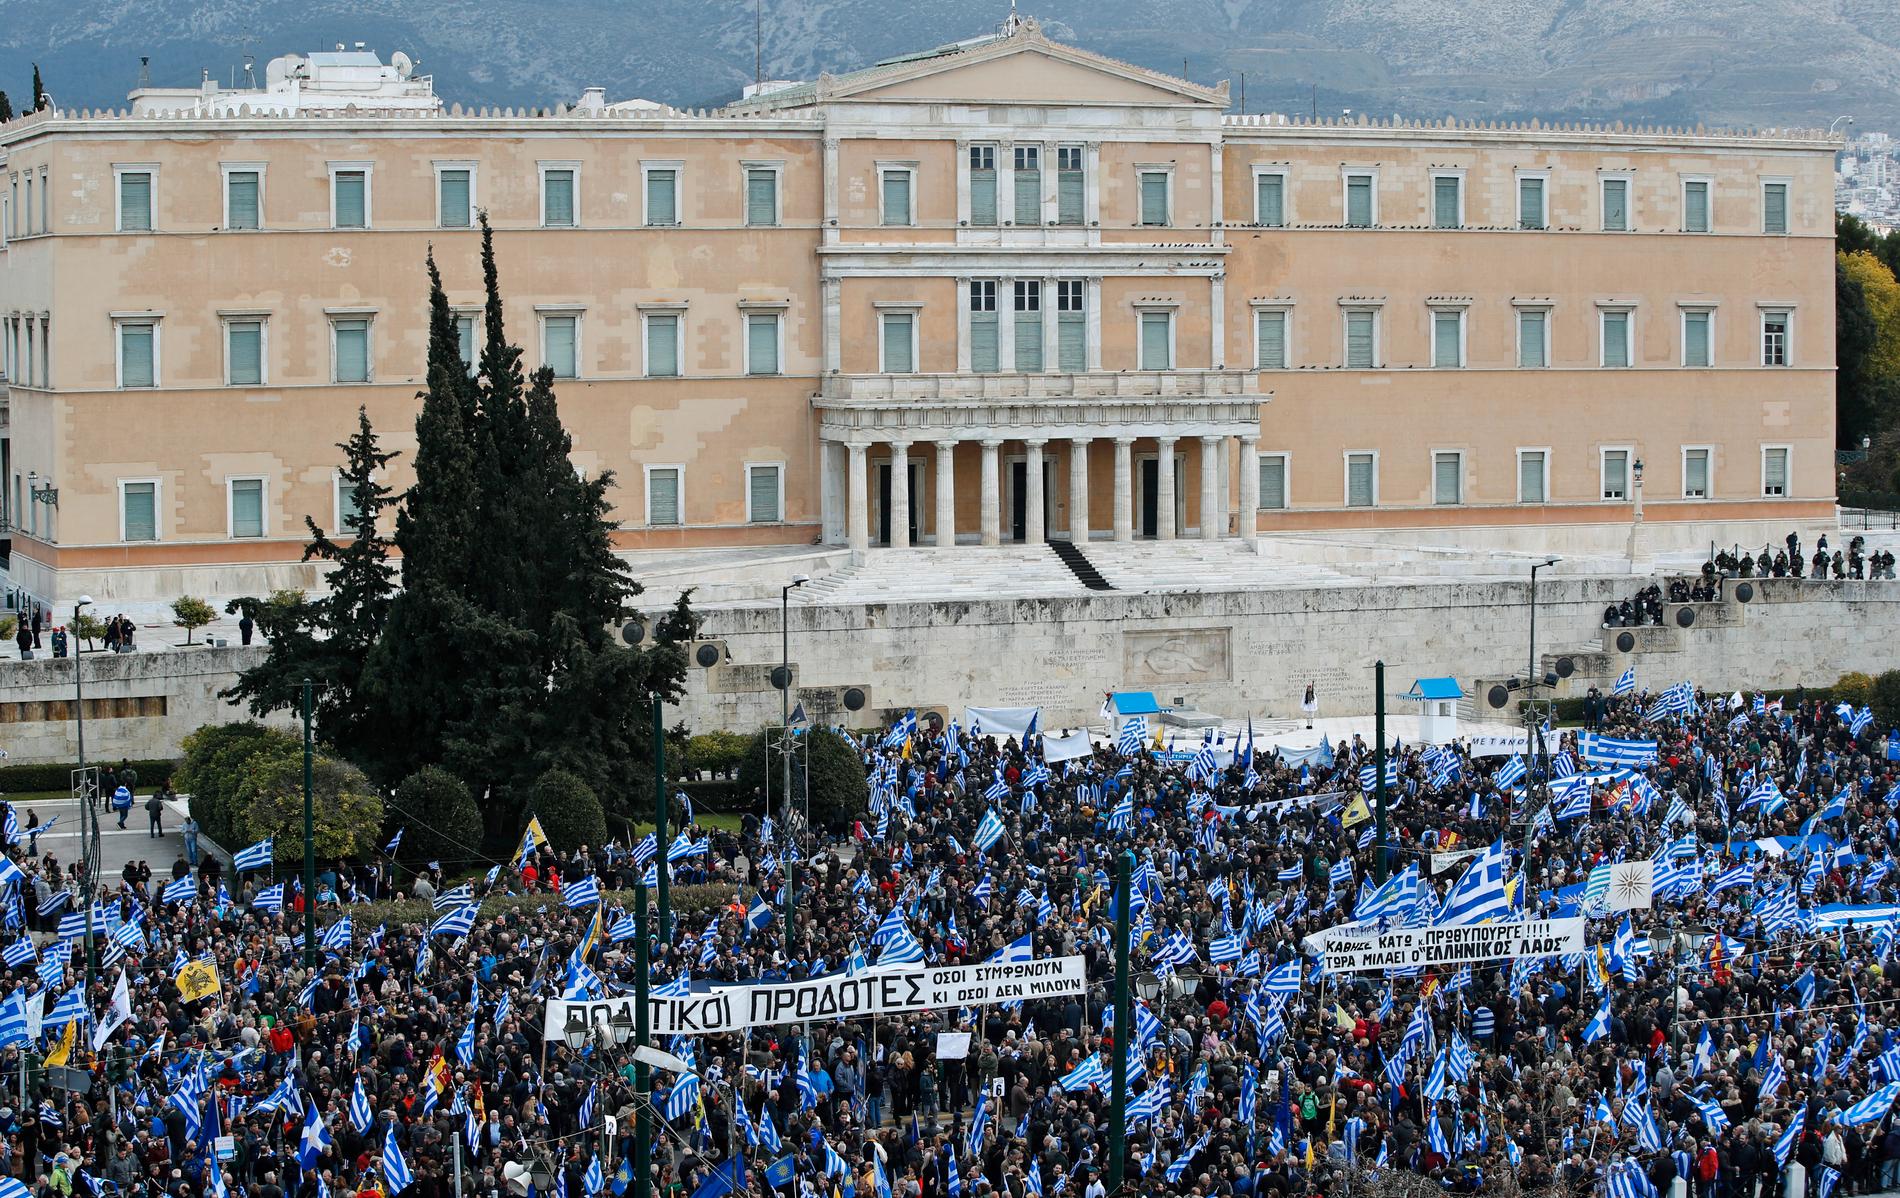 Stor demonstration utanför parlamentet i Aten i söndags. Många greker motsätter sig att grannlandet kallar sig något som överhuvudtaget innehåller namnet Makedonien, eftersom man starkt kopplar det till den grekiska identiteten och historien.